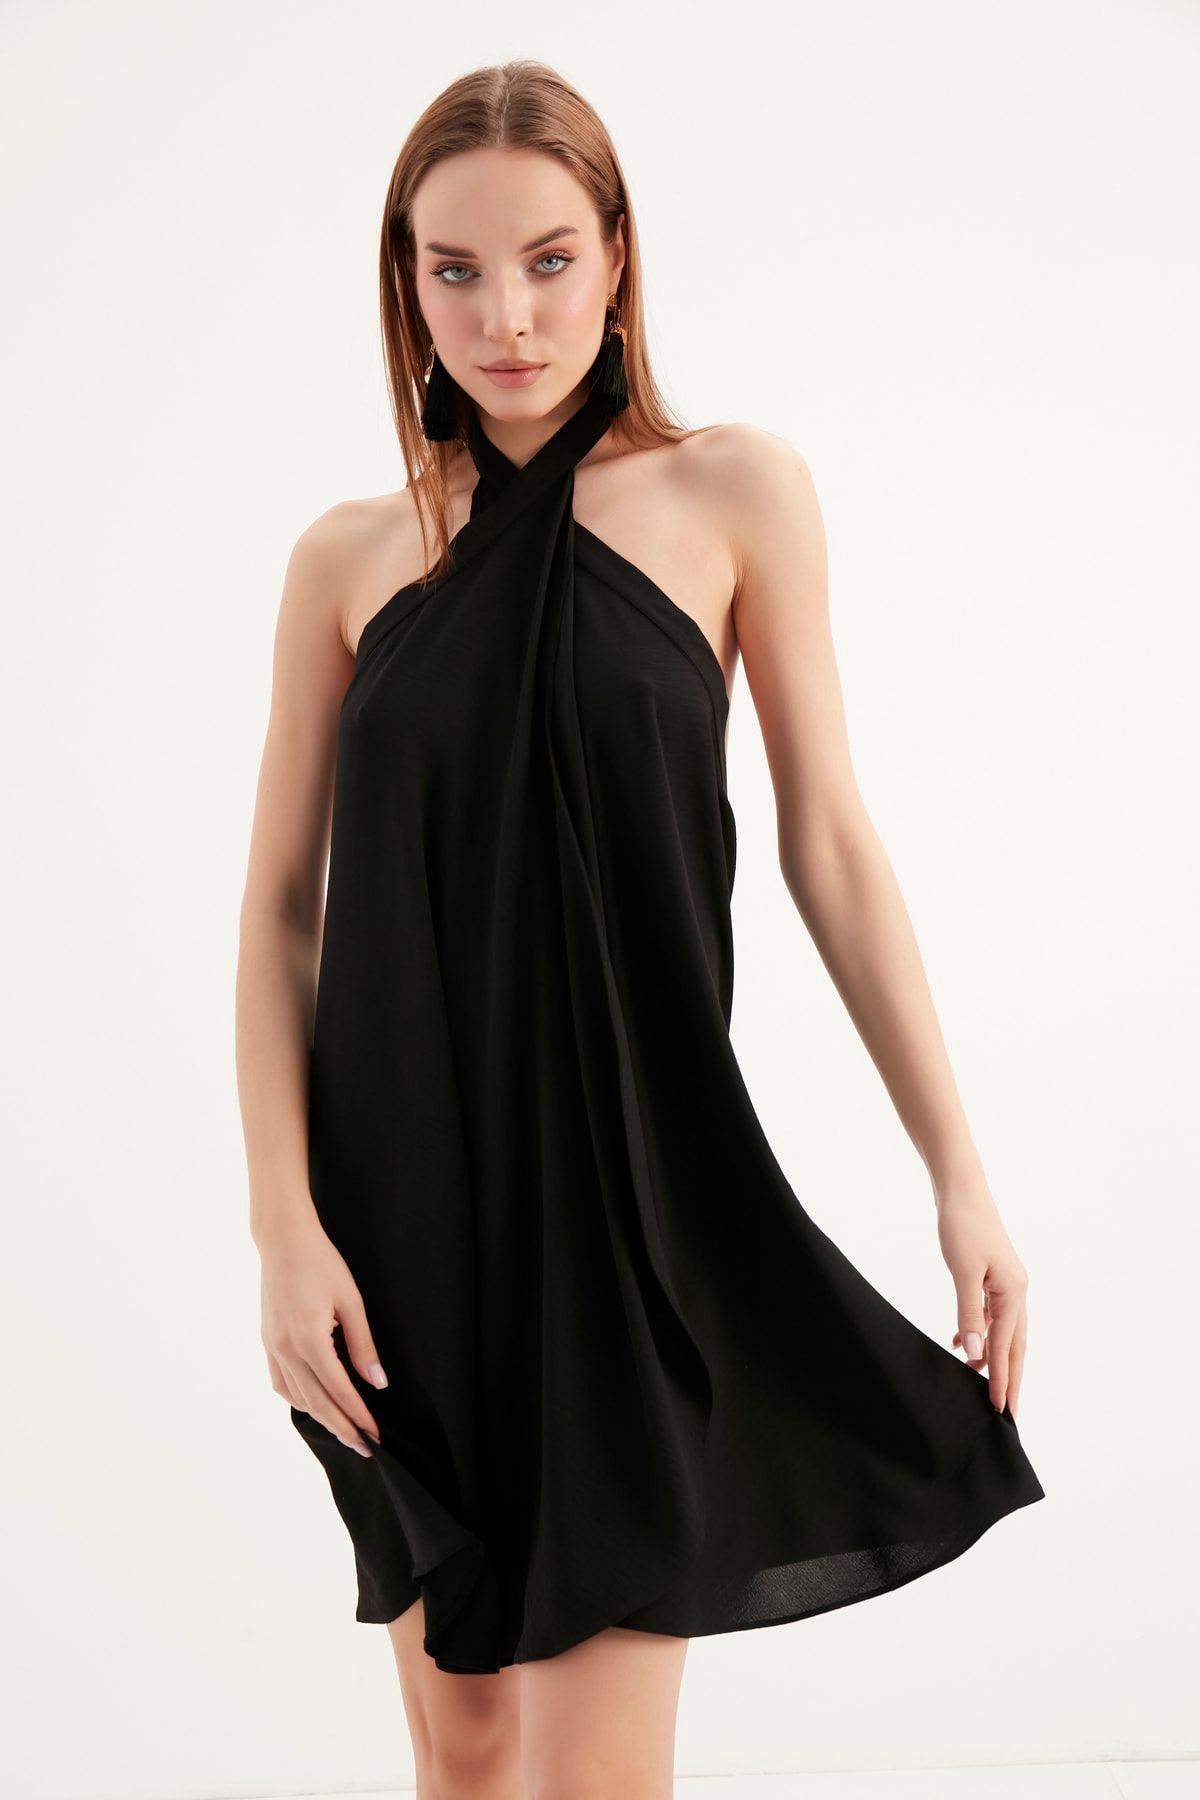 alpira Kadın Elbise Ayrobin Kumaş Boyundan Bağlamalı Kolsuz Tasarım Elbise M0015s